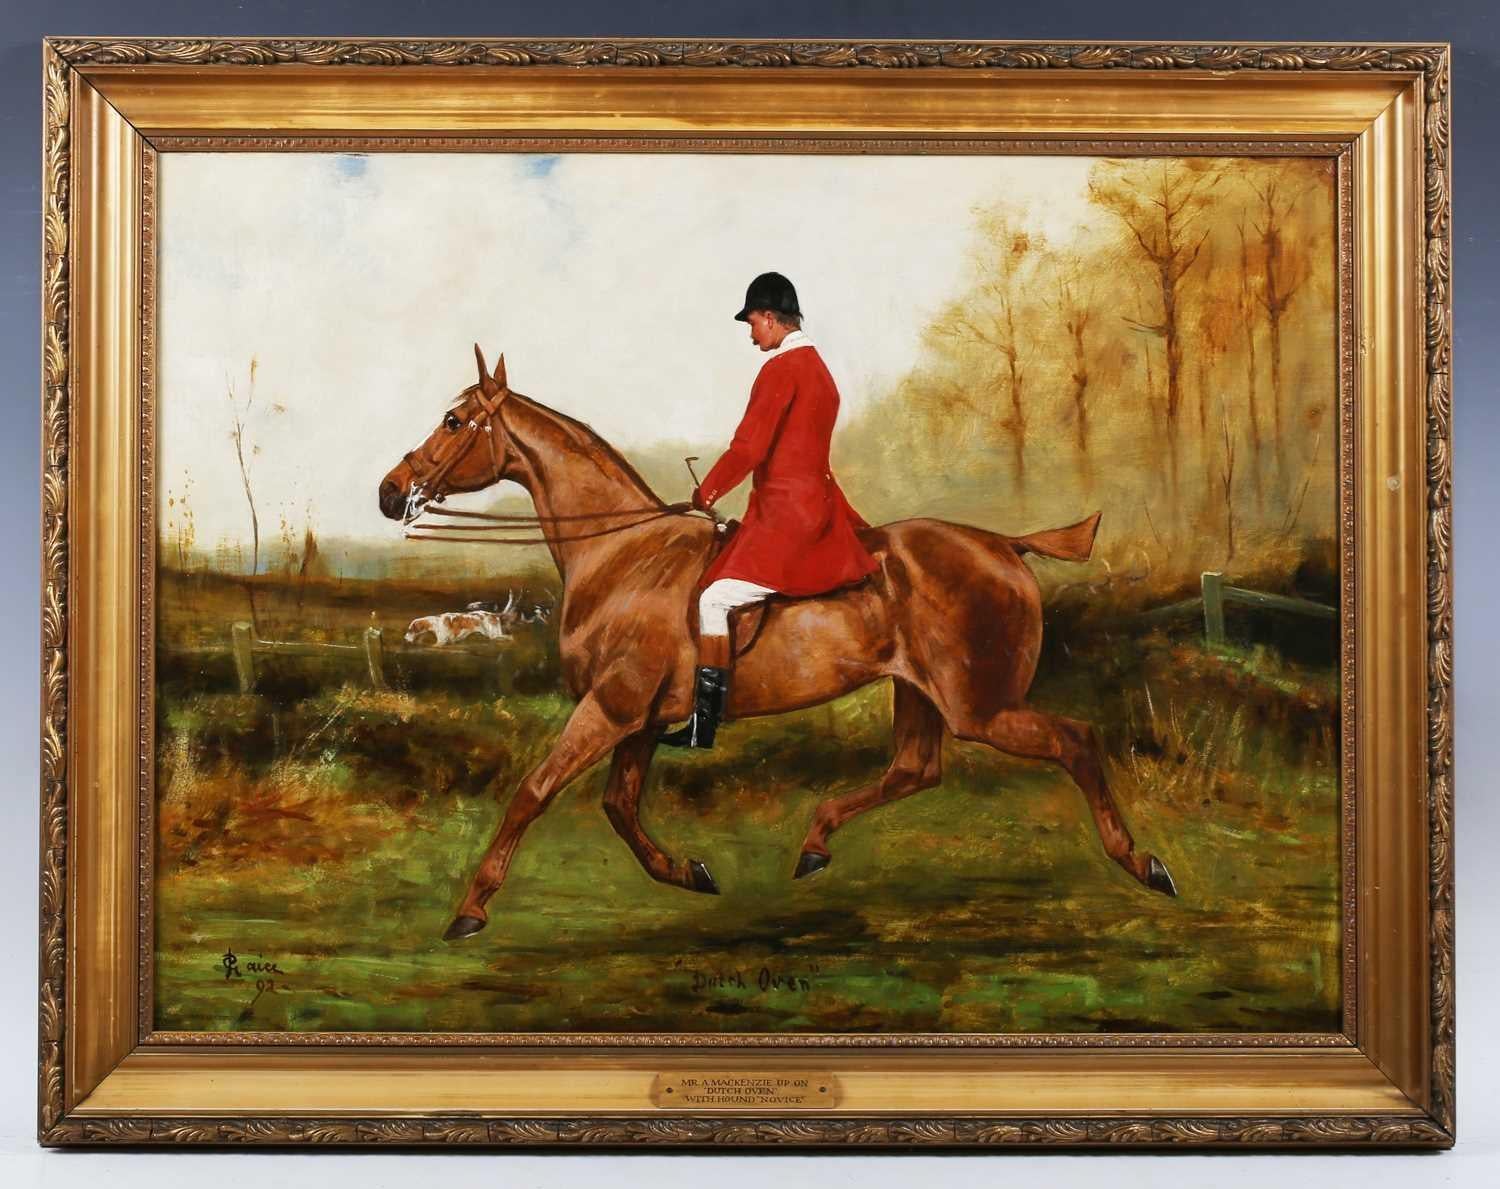 Une amende  peinture à l'huile sur toile d'un cheval et d'un cavalier avec des chiens.
Cette scène traditionnelle de campagne montre le cavalier portant sa veste de chasse rouge, identifié comme M. Mackenzie chevauchant "dutch oven"
avec des chiens